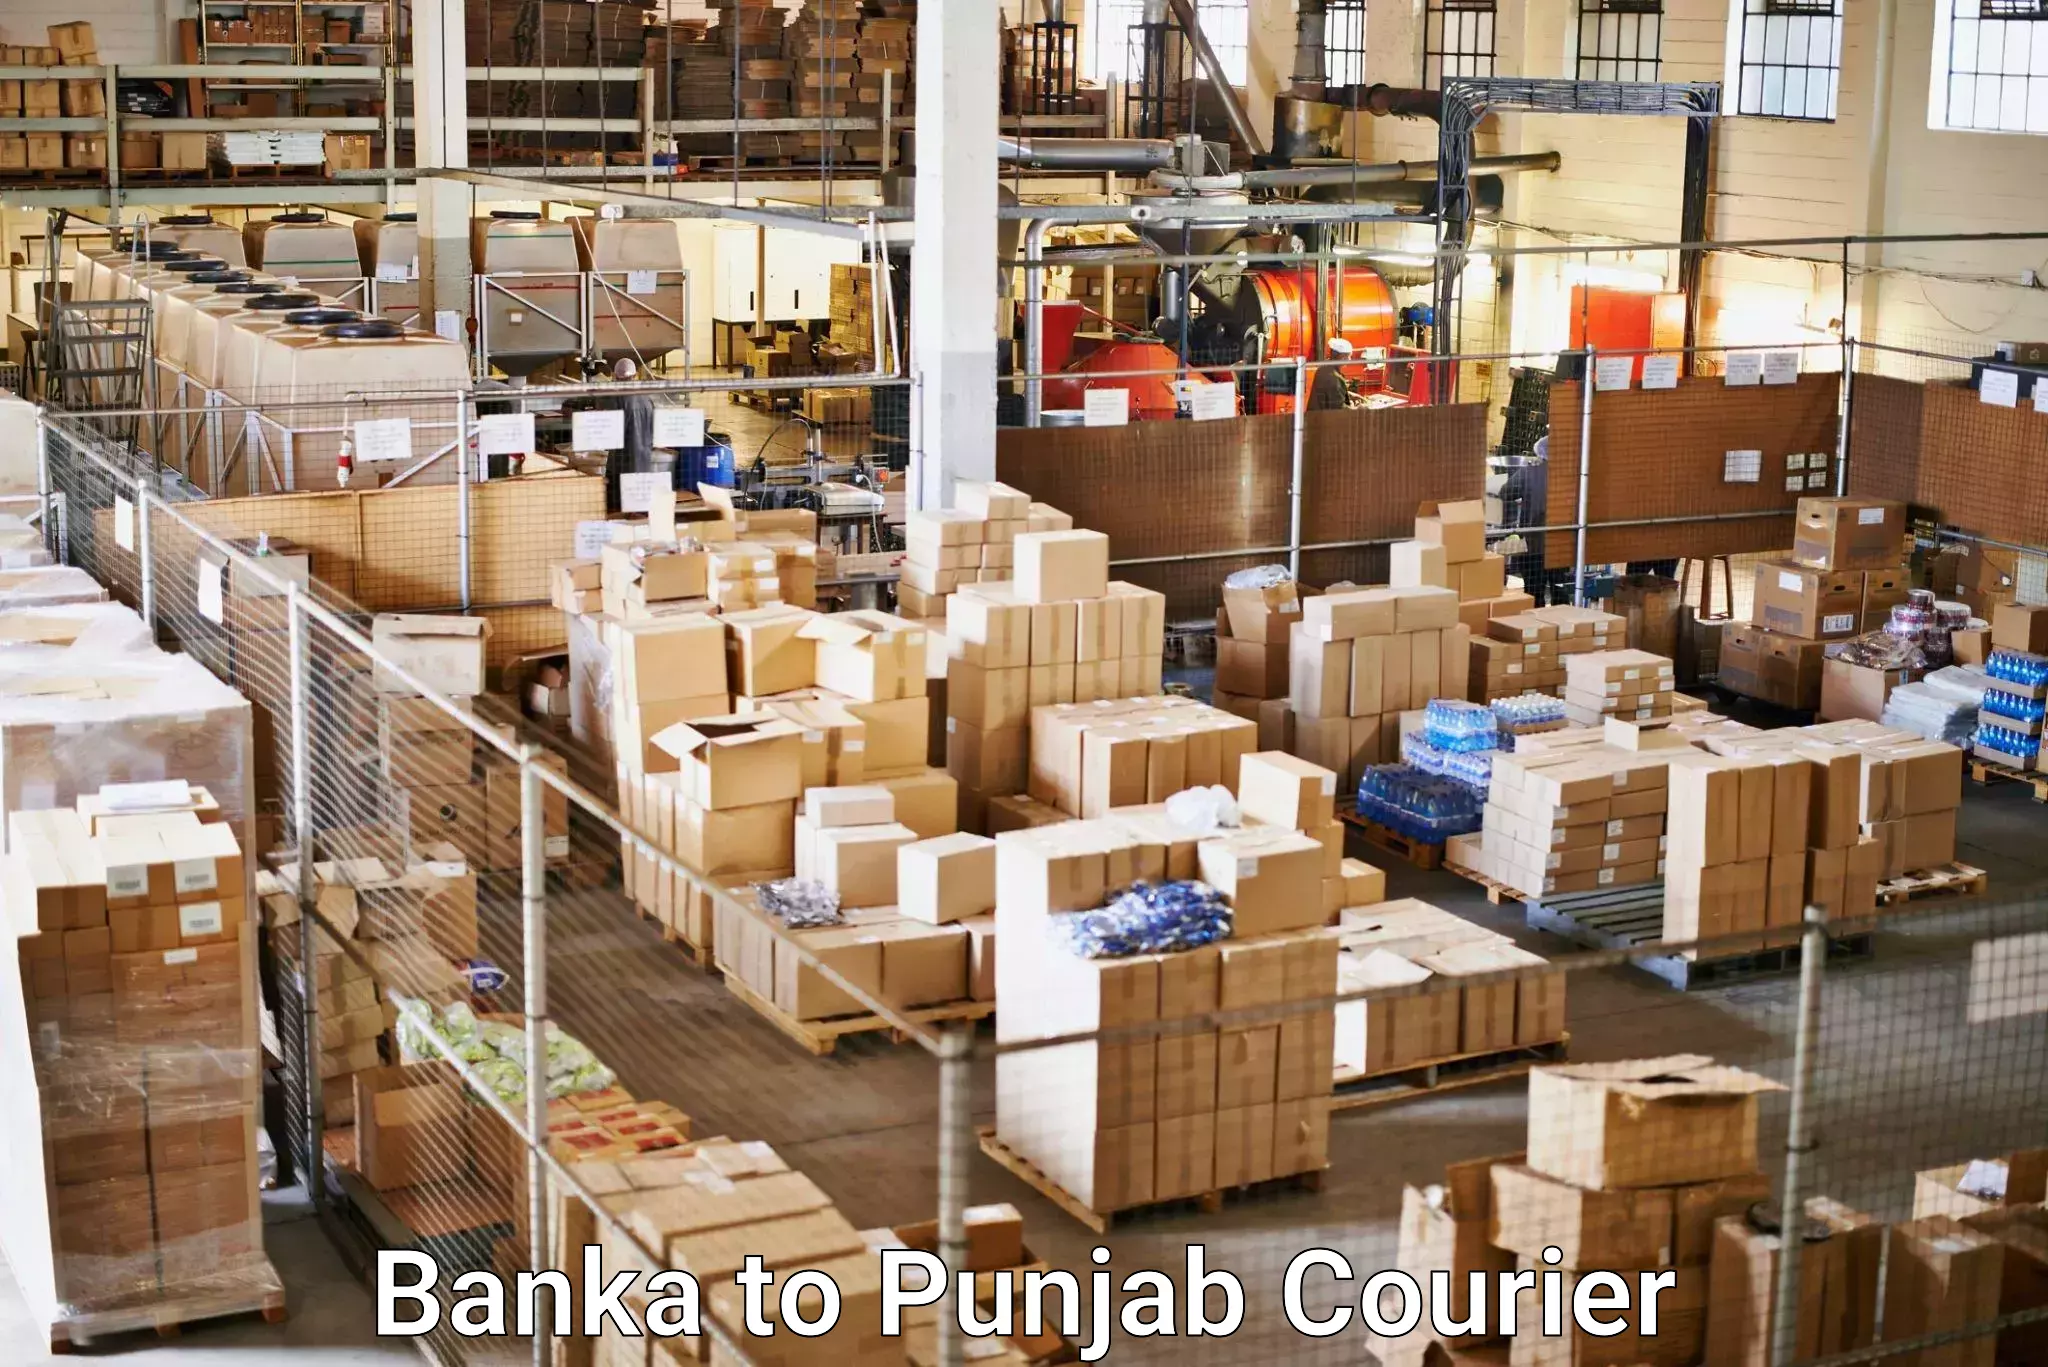 Efficient shipping platforms Banka to Punjab